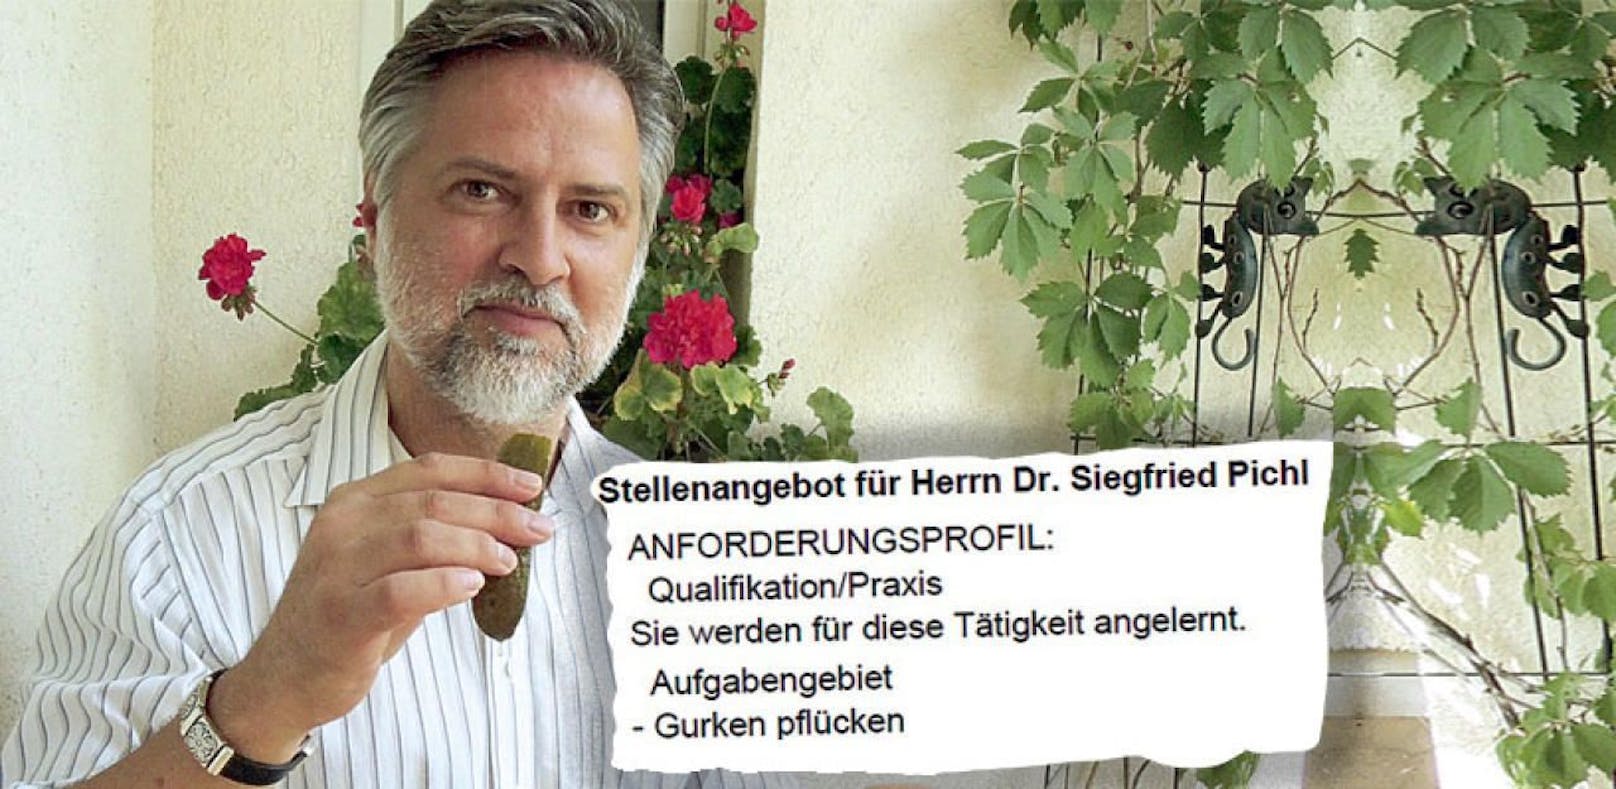 Siegfried Pichl mit Gurke. Der promovierte Historiker soll jetzt Gemüse ernten.